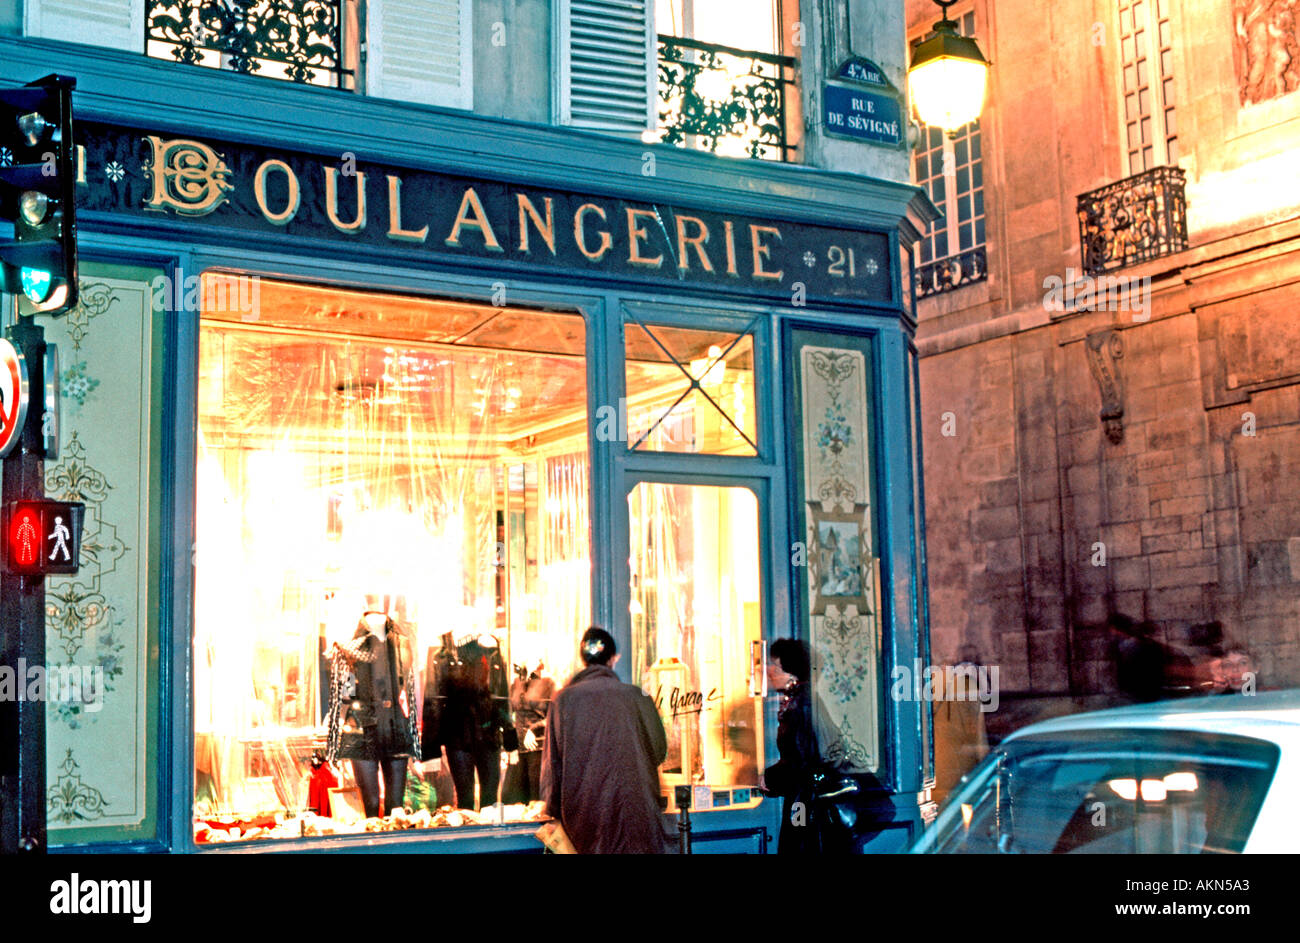 Paris France, Boulangerie People Looking Shop Window, Old French Shop front  Clothing Store, Le Marais, vintage sign, paris storefronts Stock Photo -  Alamy